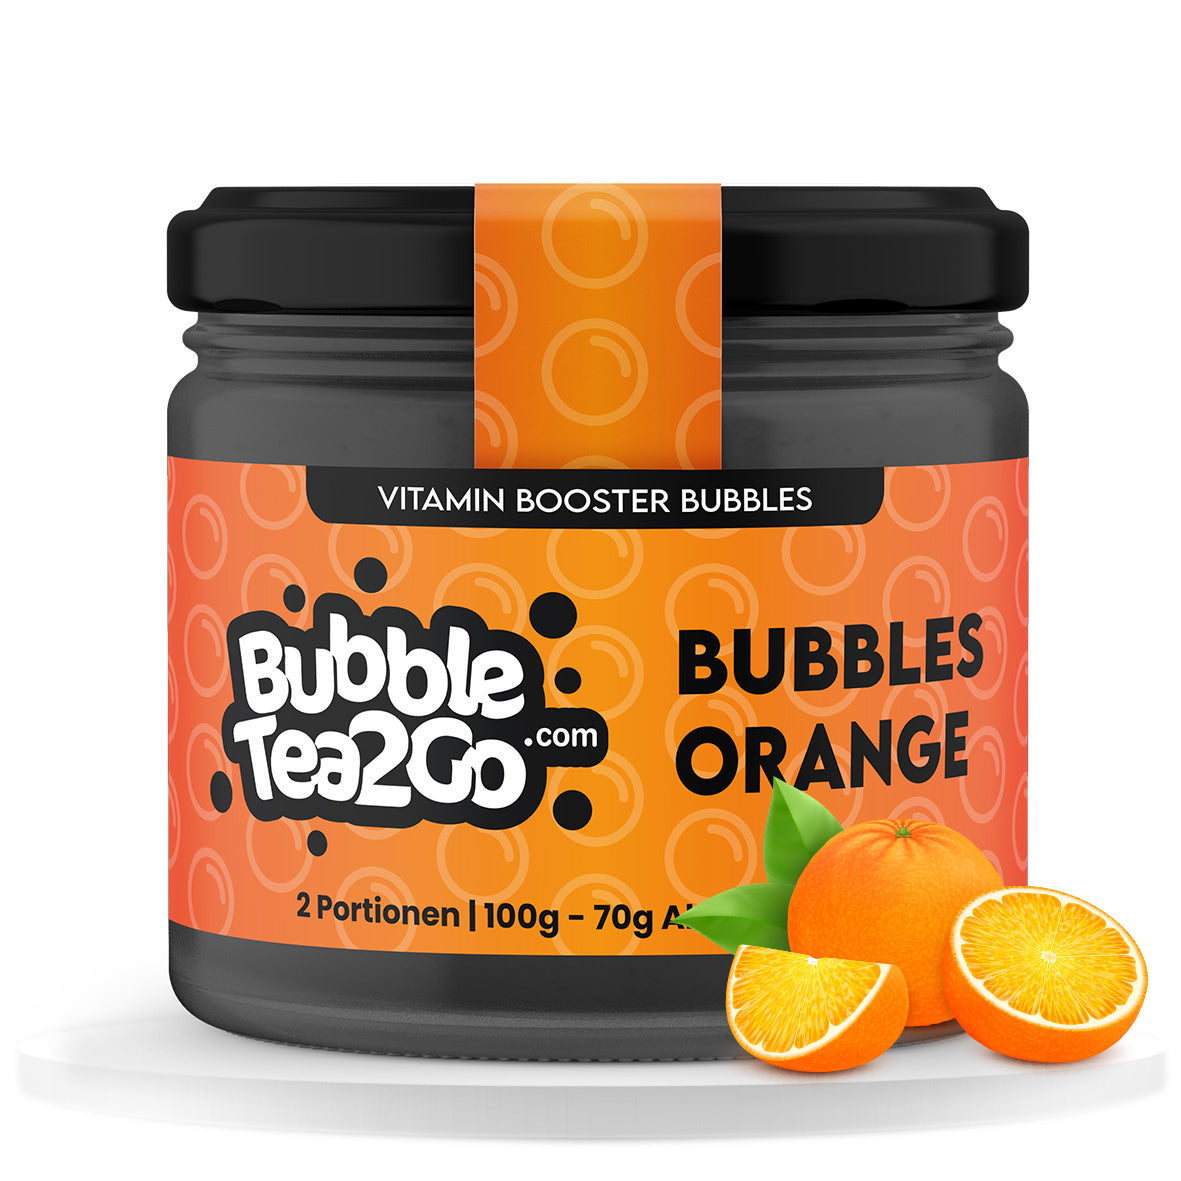 Bubbles - Sinaasappel 2 porties (120g)